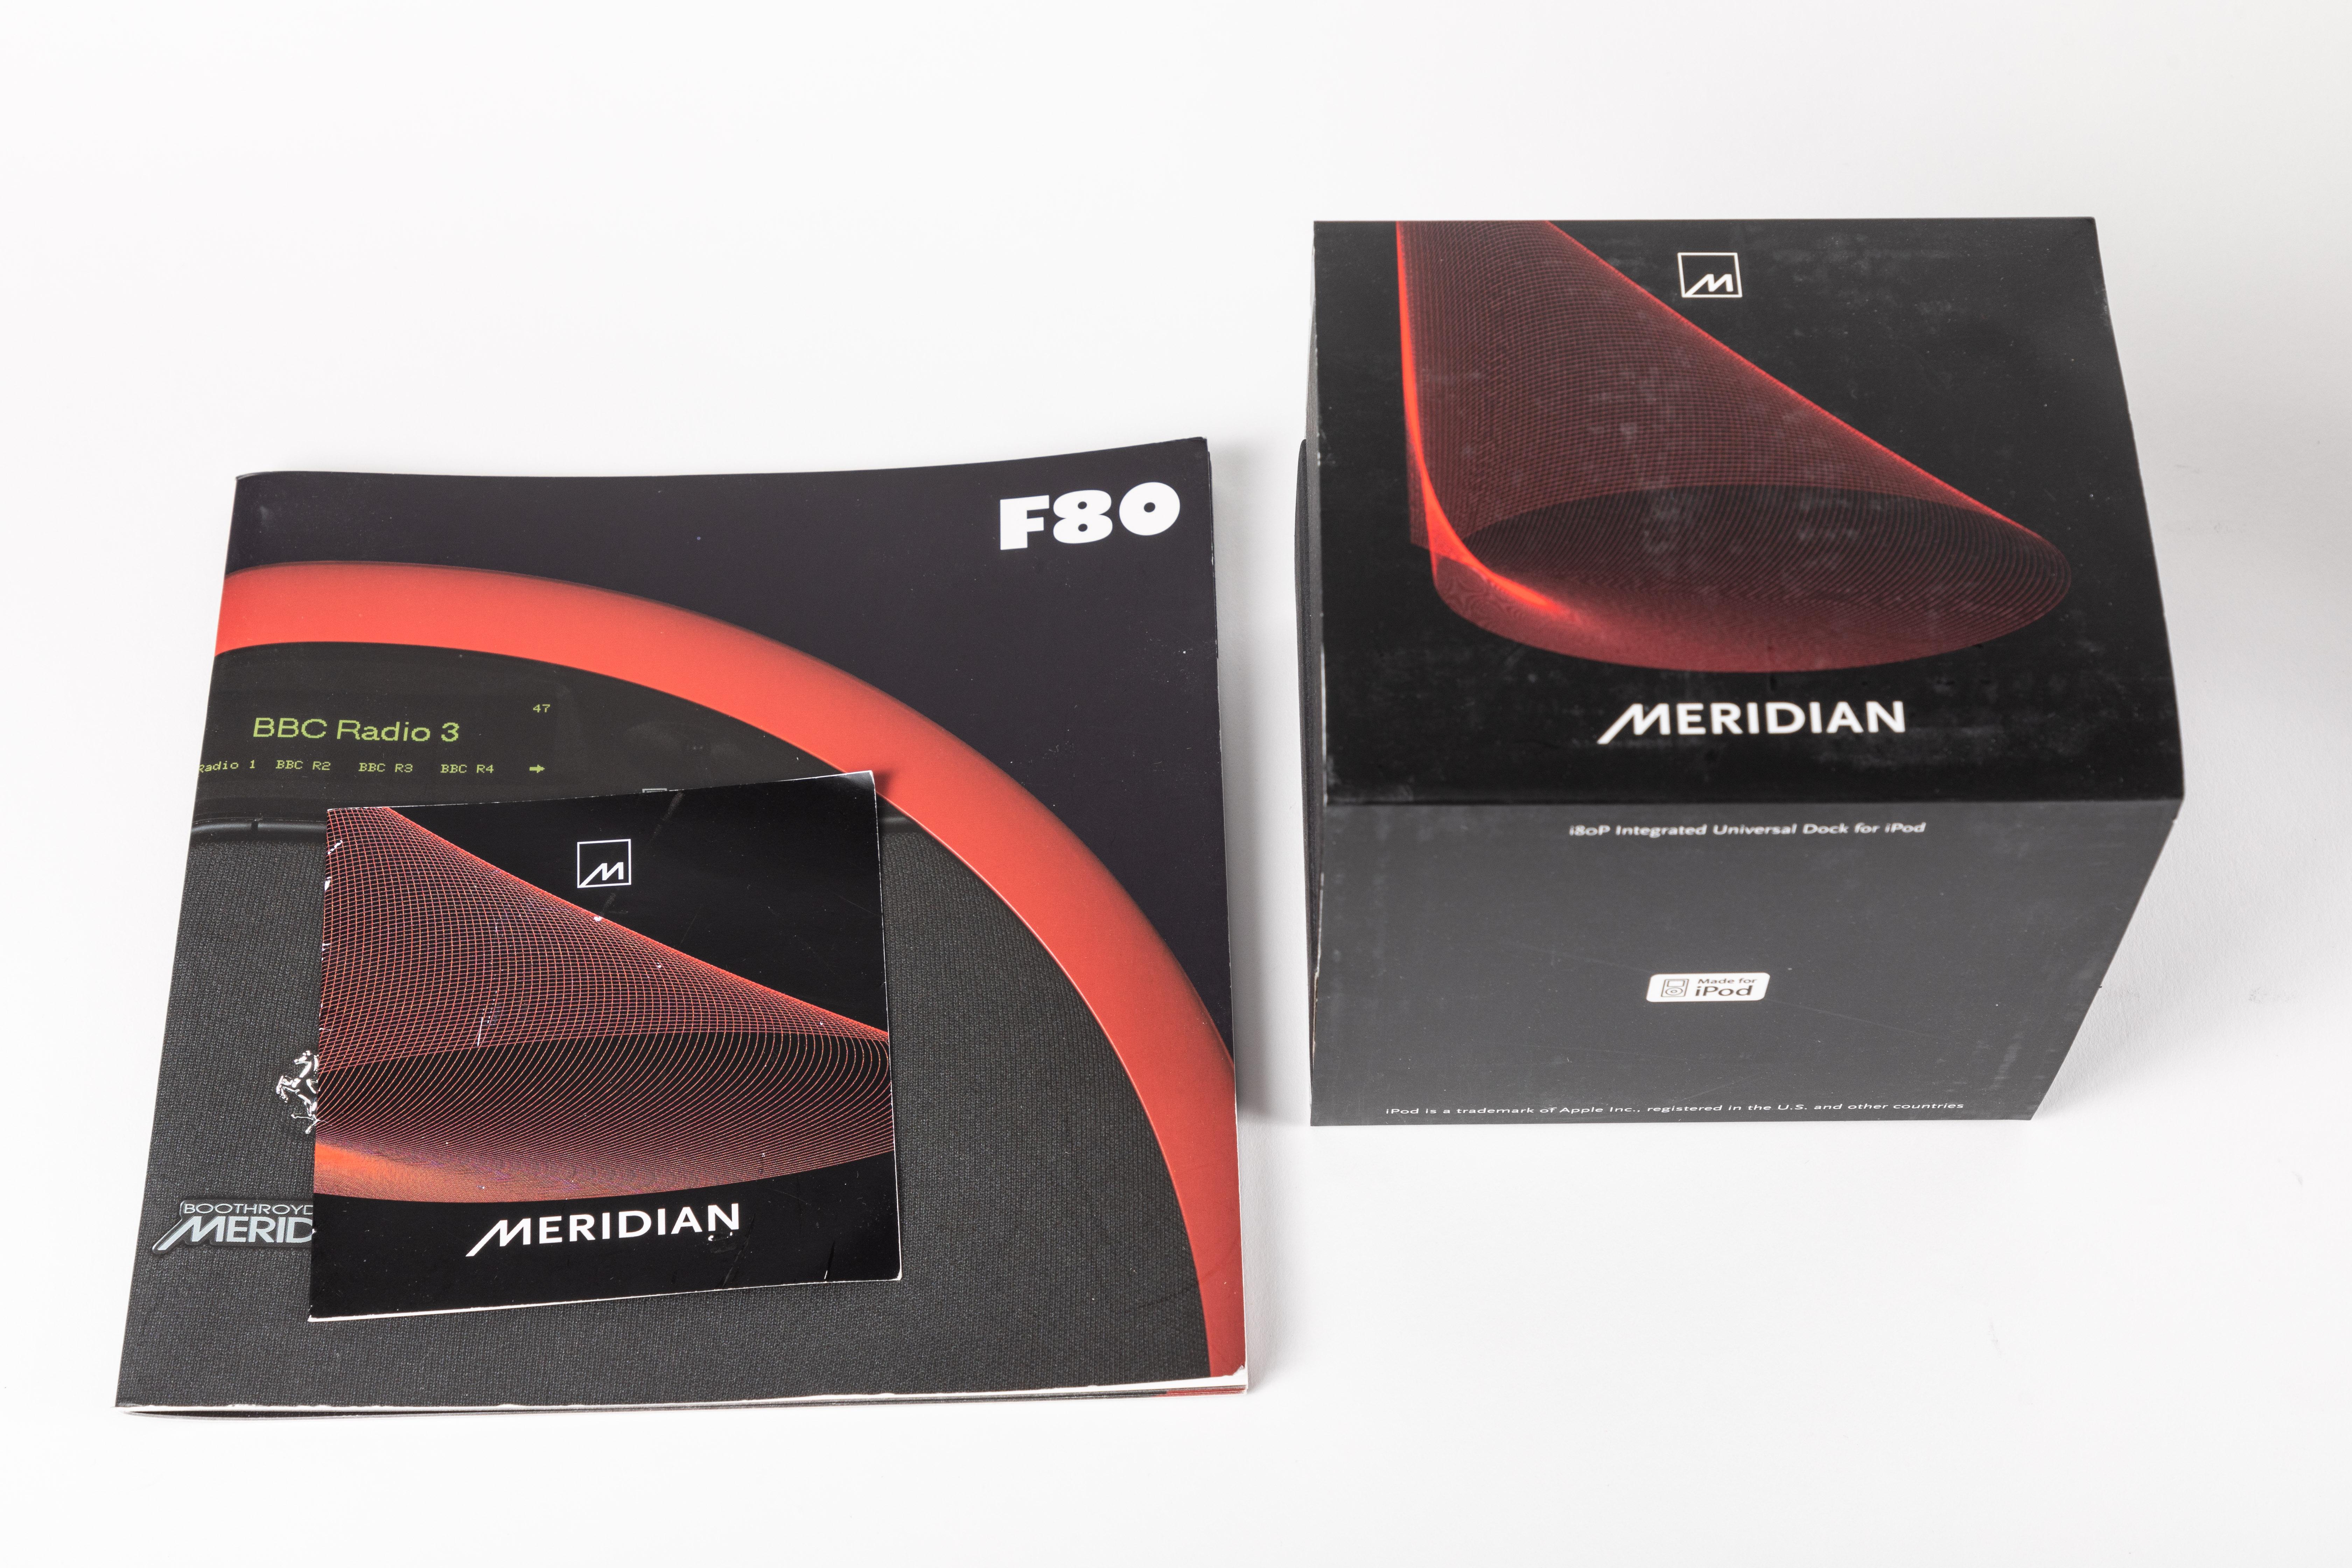 Ferrari/Meridian F80 Stereo System 2